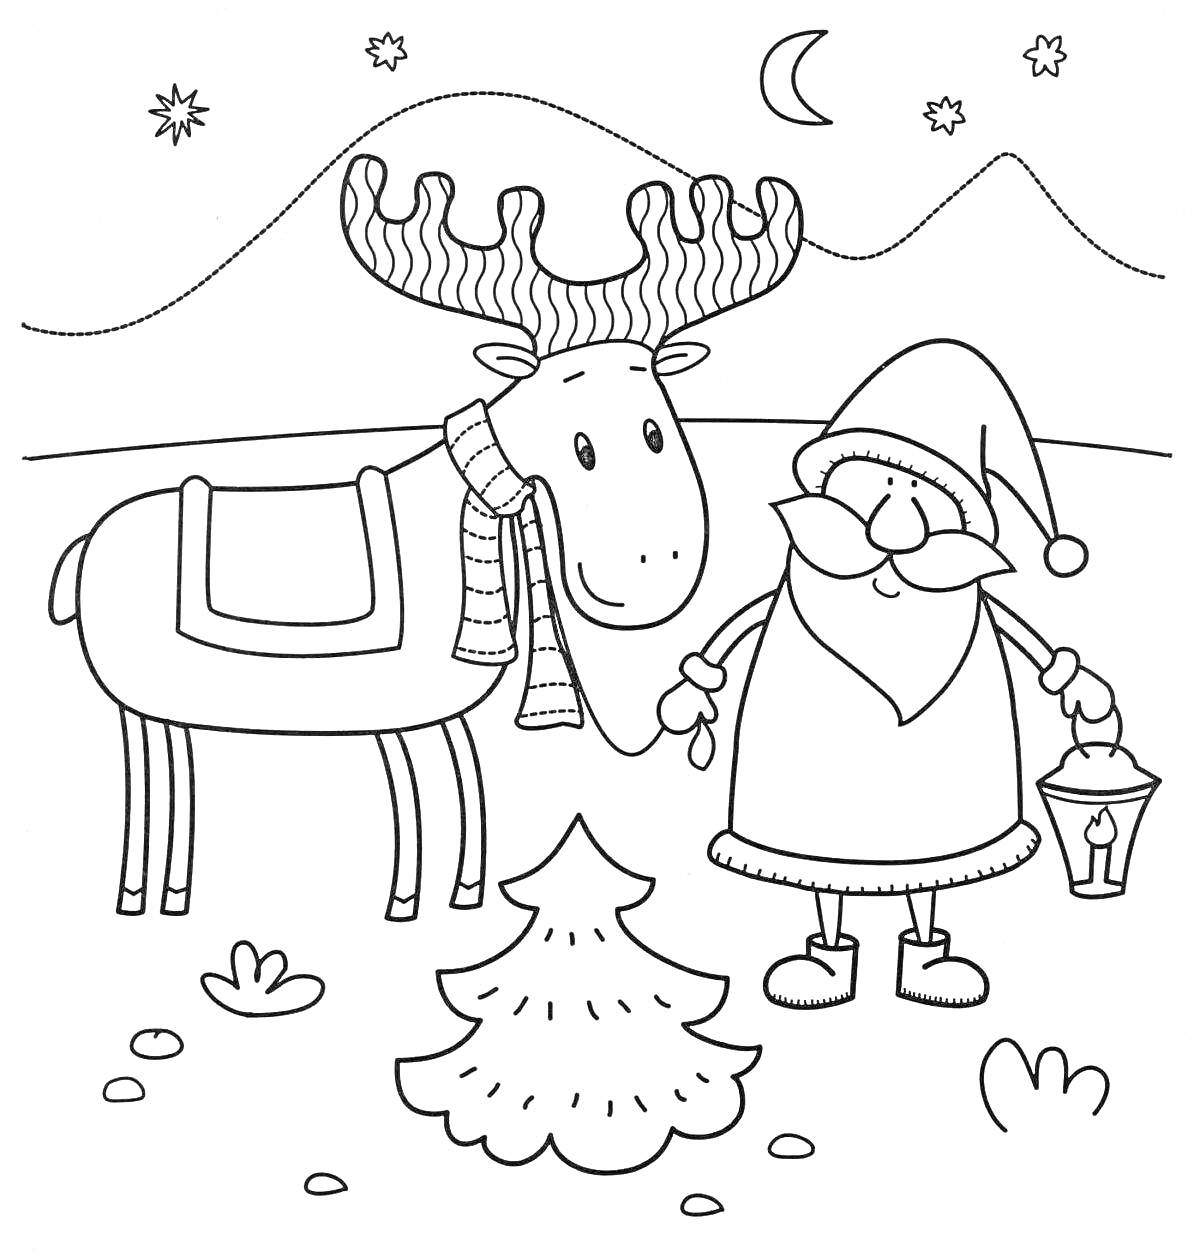 Раскраска Новогодний олень с шарфом, рождественский персонаж с фонарем, ёлка, звезды, луна и горы на фоне